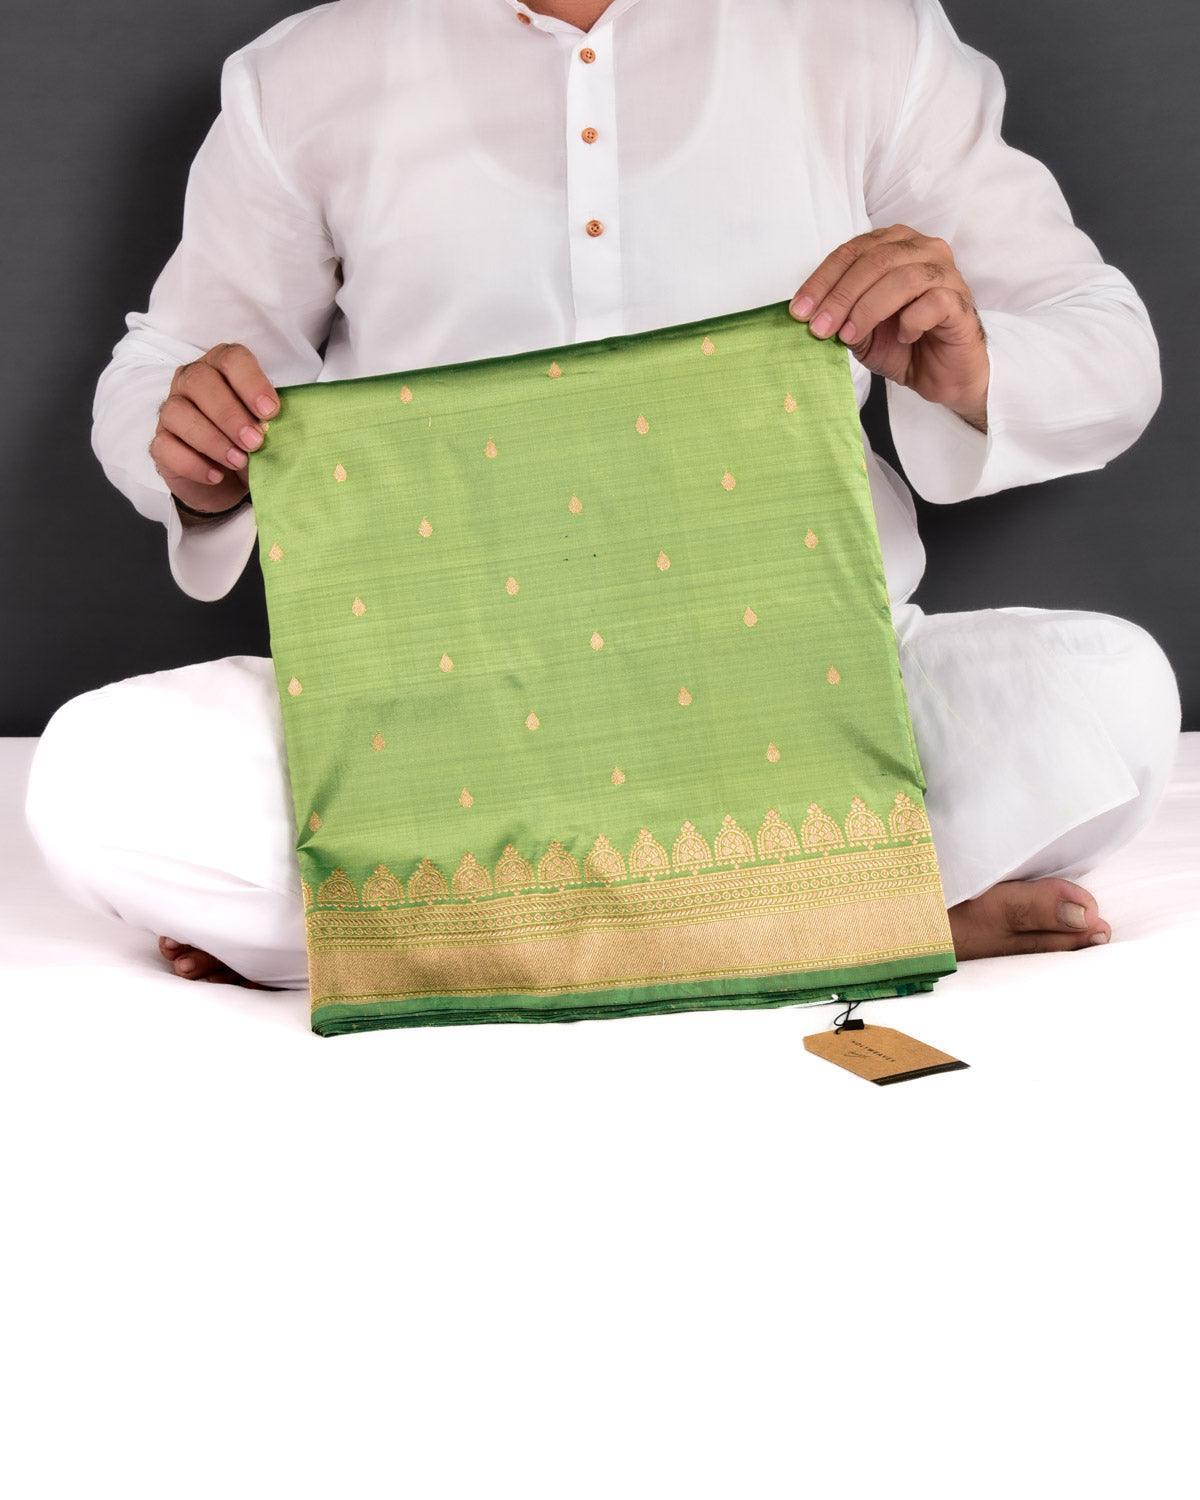 Green Banarasi Tilak Buti Light-weight Kadhuan Brocade Handwoven Katan Silk Saree - By HolyWeaves, Benares